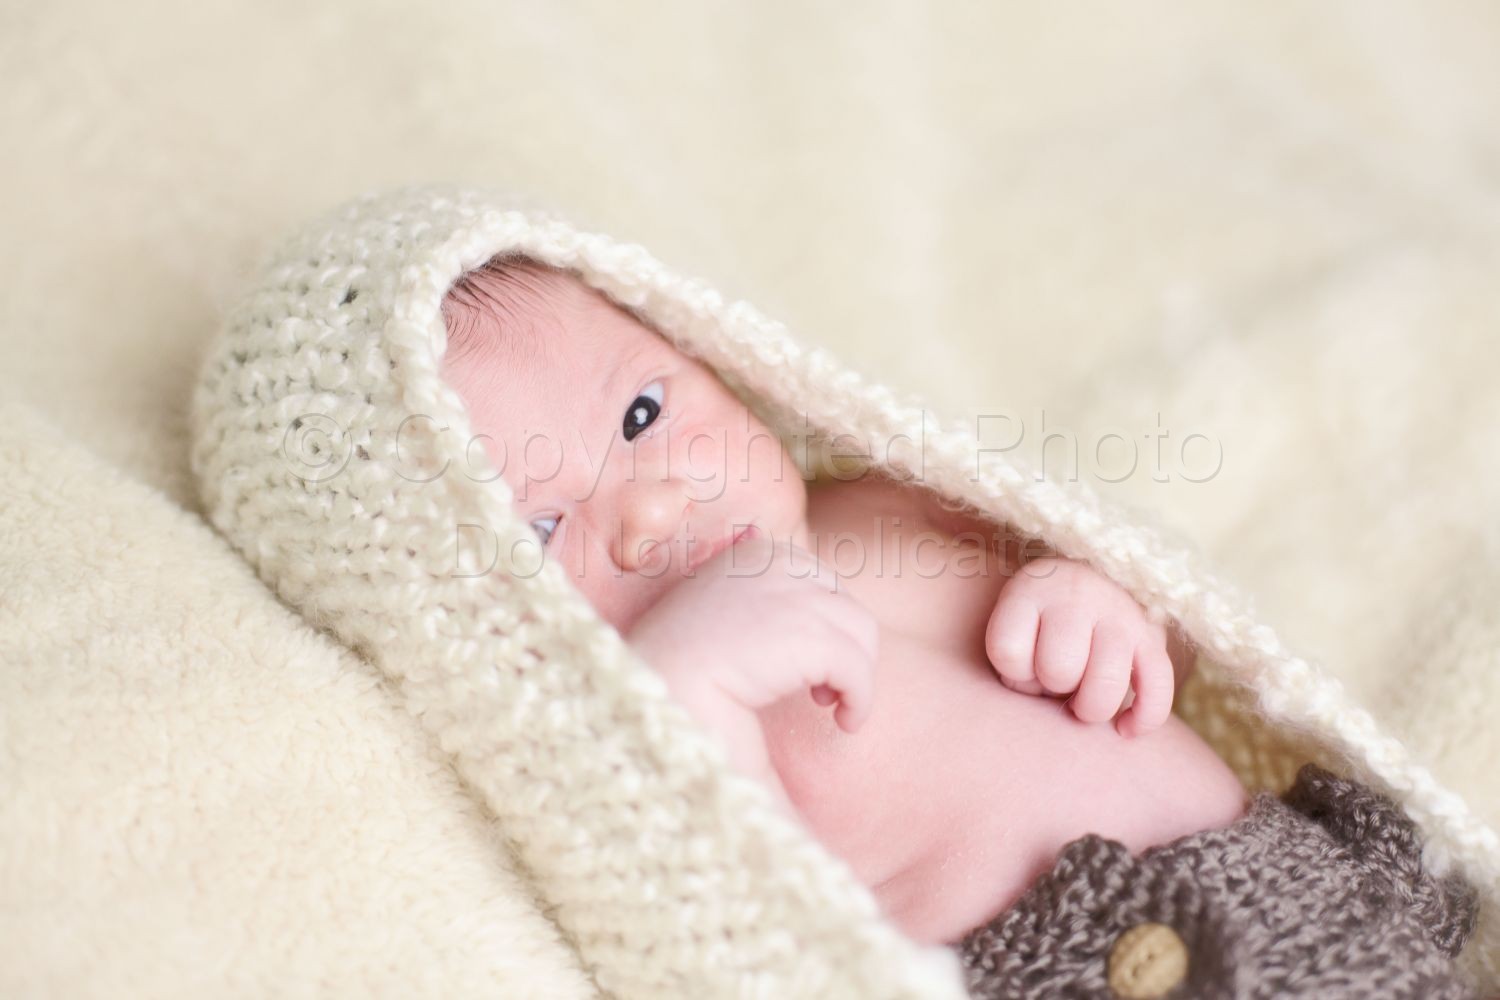 Baby Adrian | Farh-68-Edit.jpg